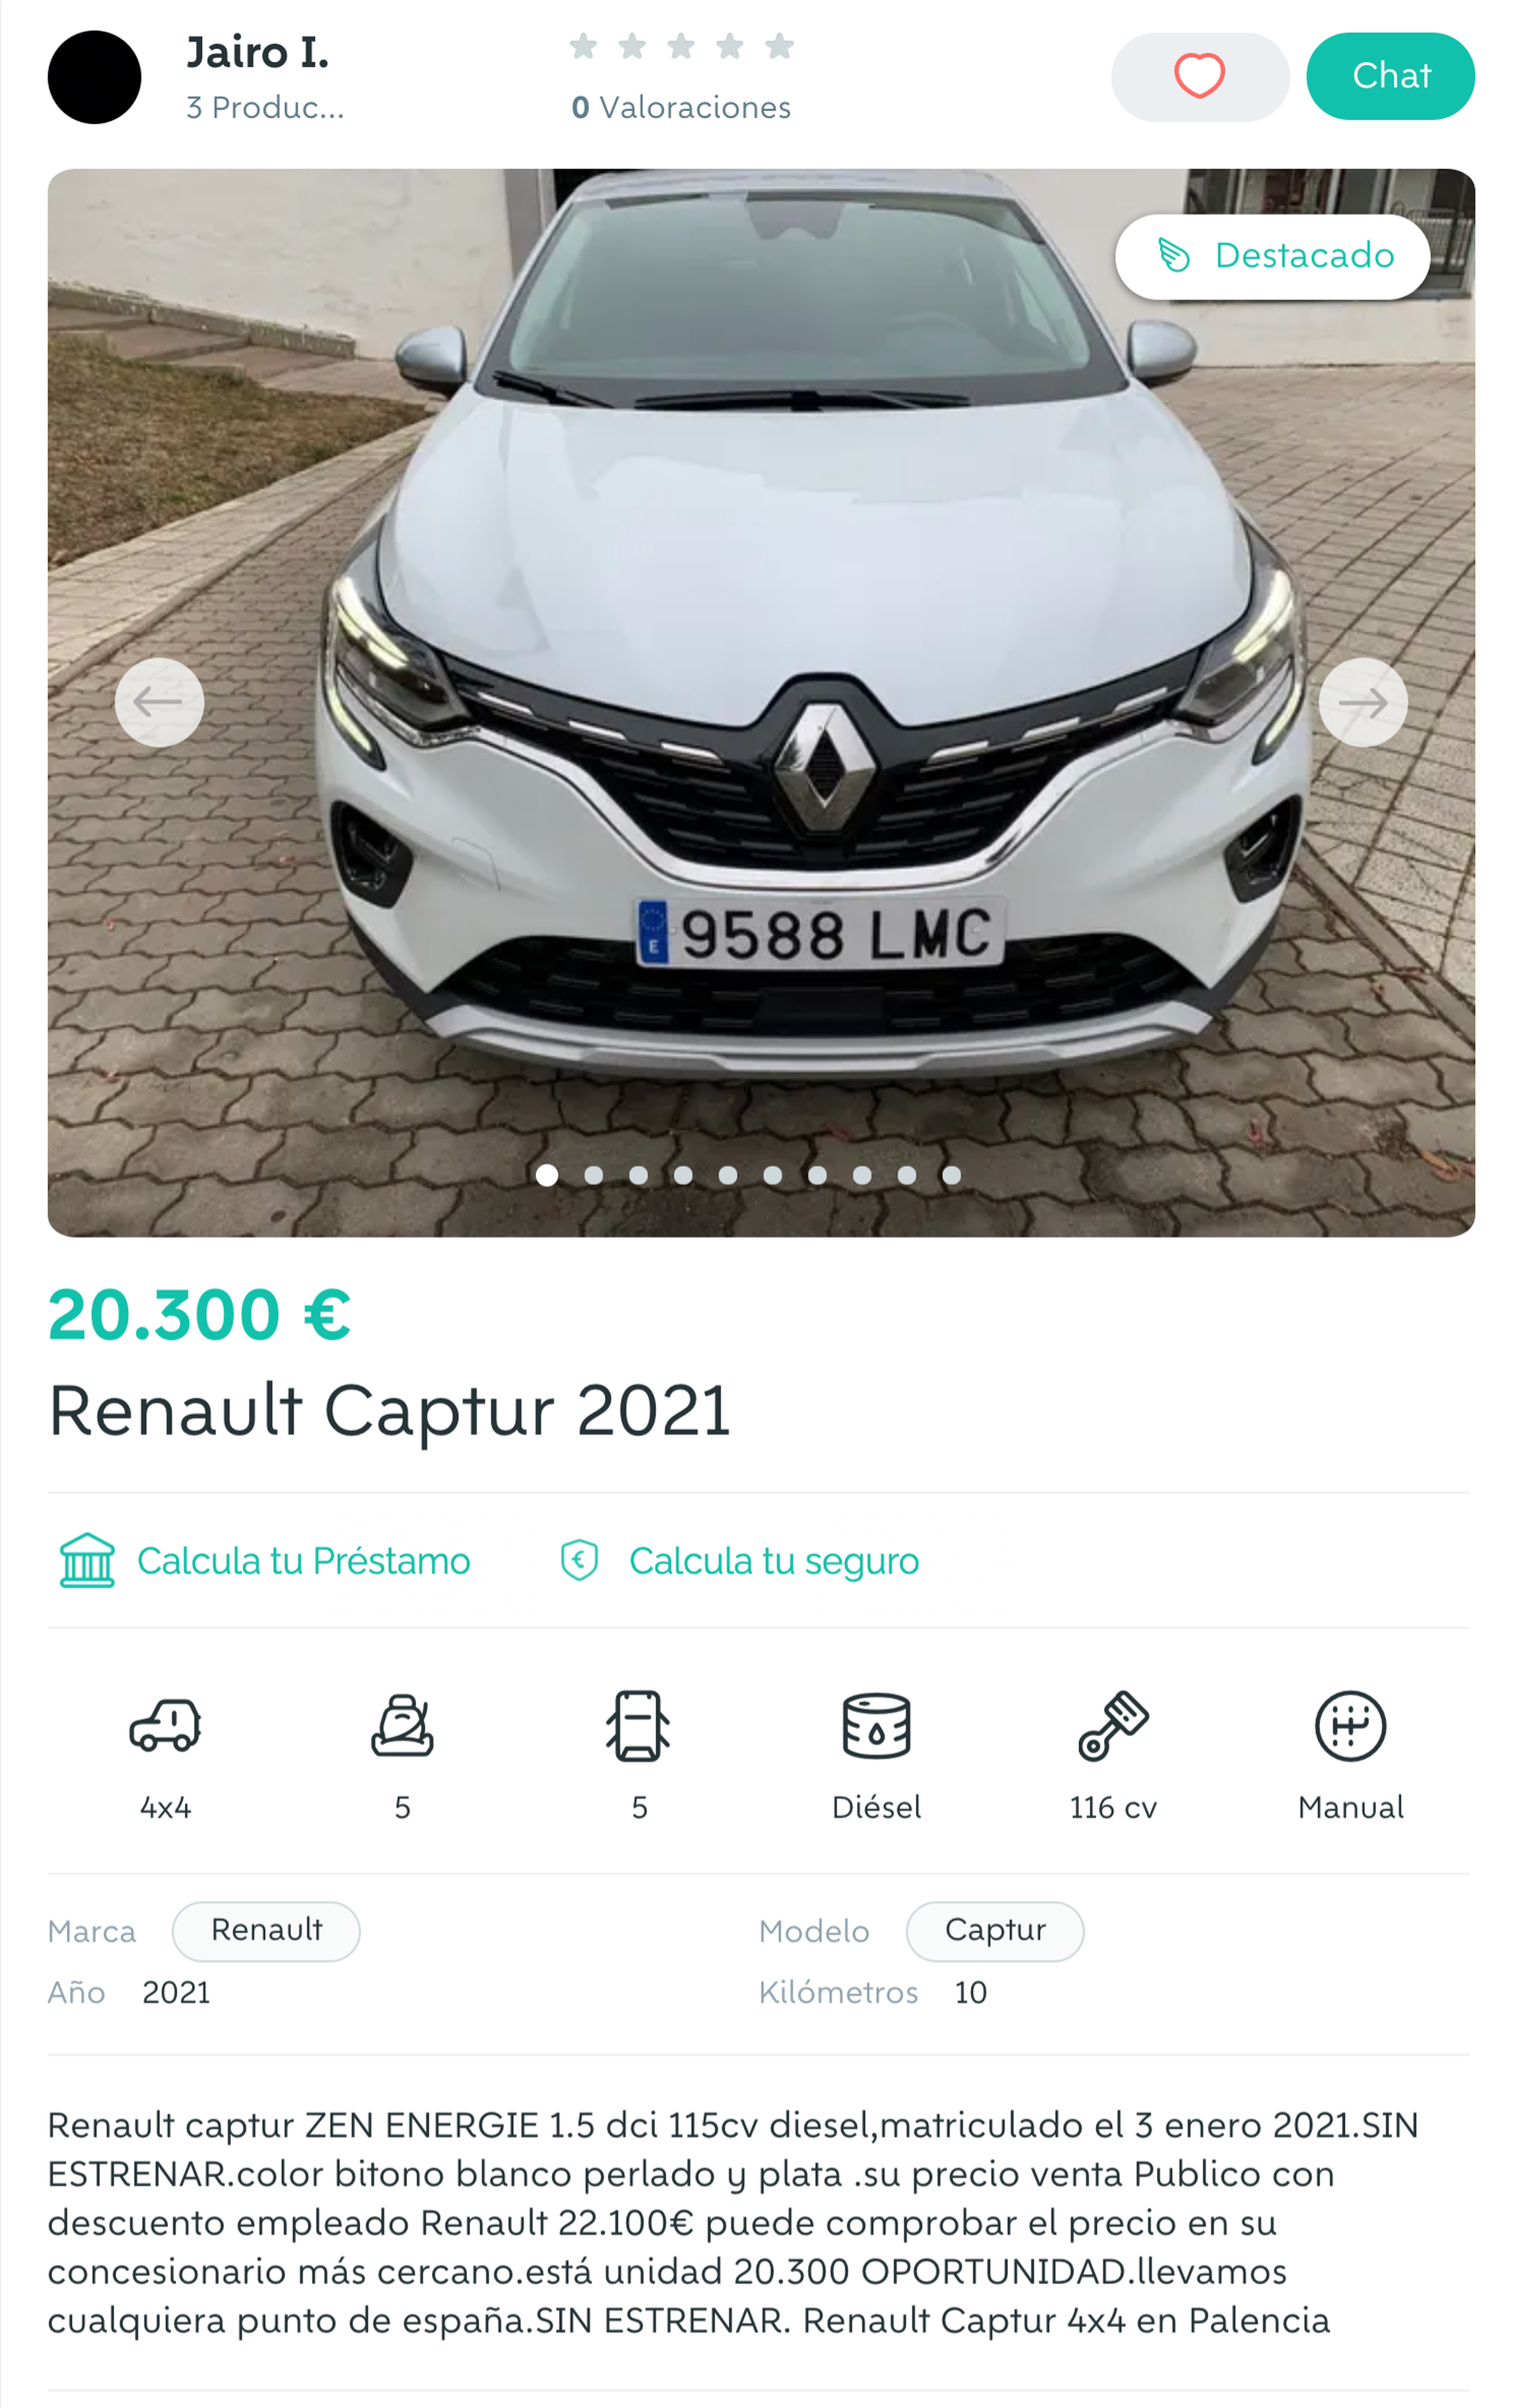 Renault Captur Wallapop